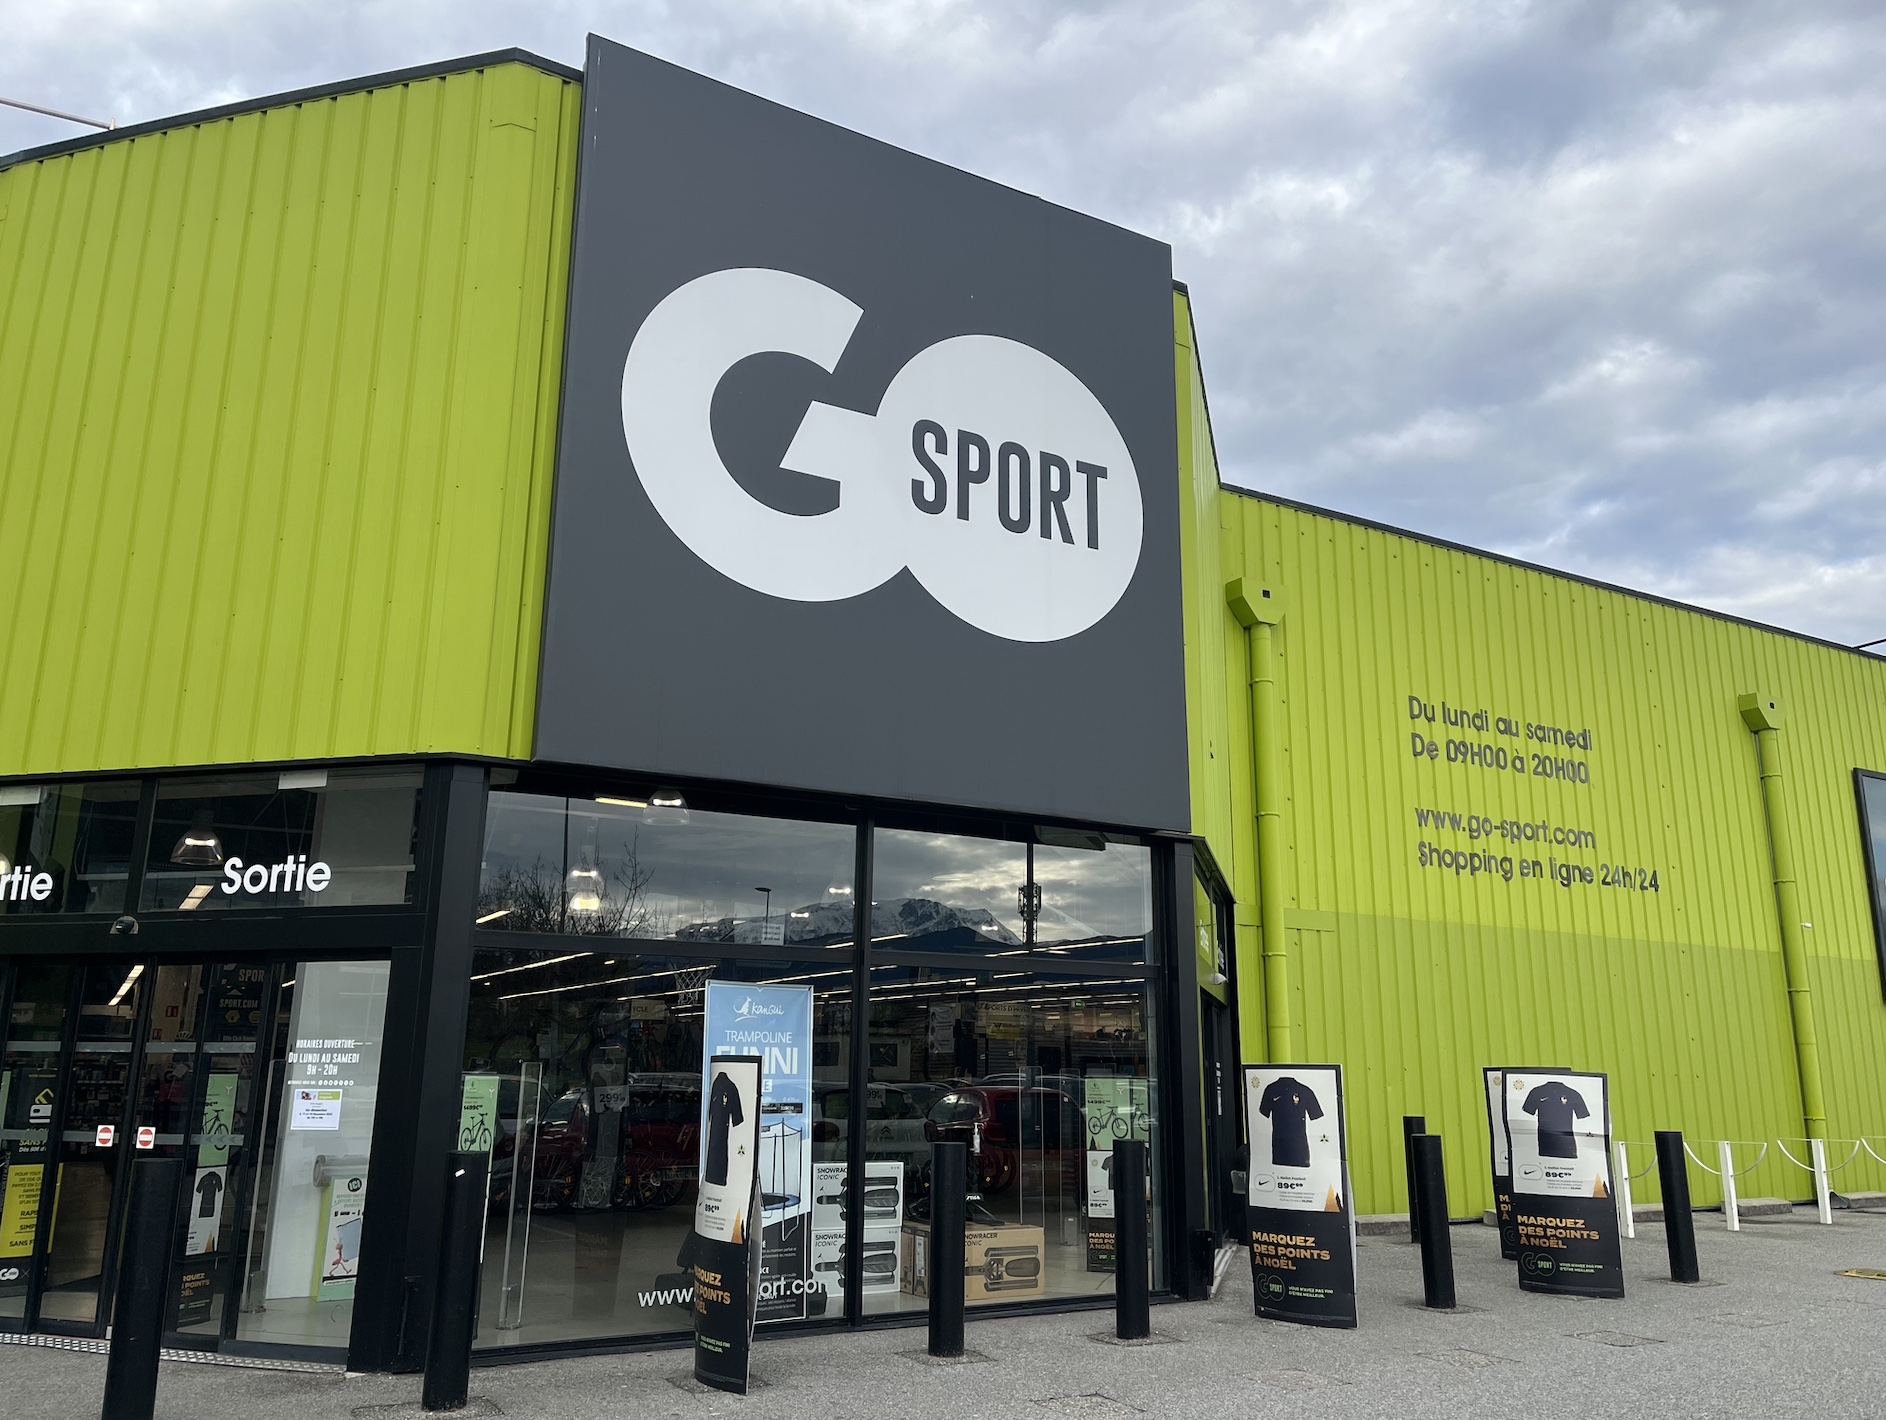 Go Sport : à l'aube d'une nouvelle audience, pourquoi le rachat de Gap France inquiète encore plus